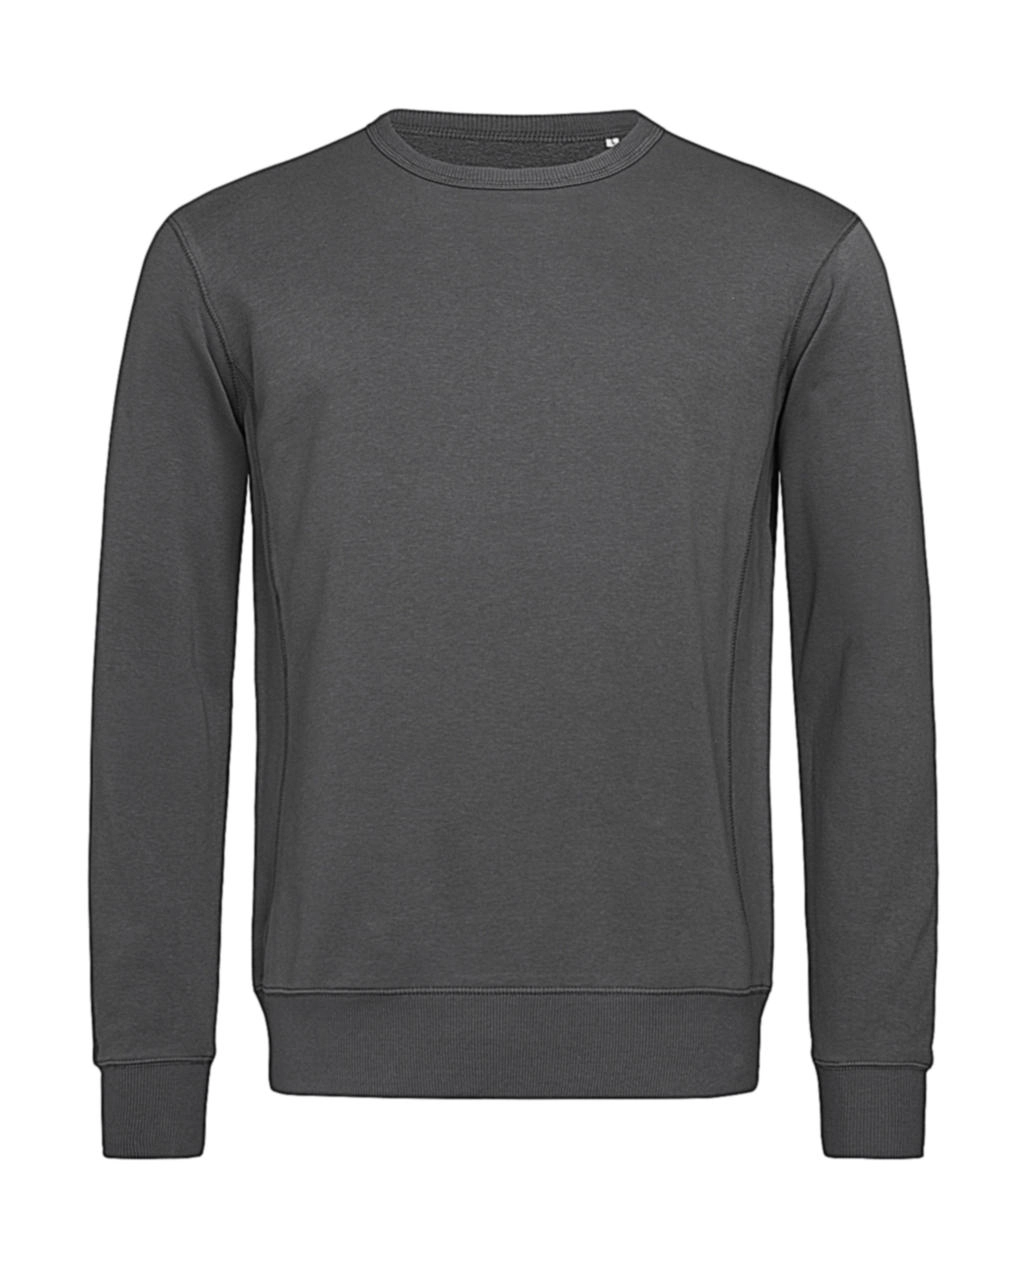 Sweatshirt Select zum Besticken und Bedrucken in der Farbe Slate Grey mit Ihren Logo, Schriftzug oder Motiv.